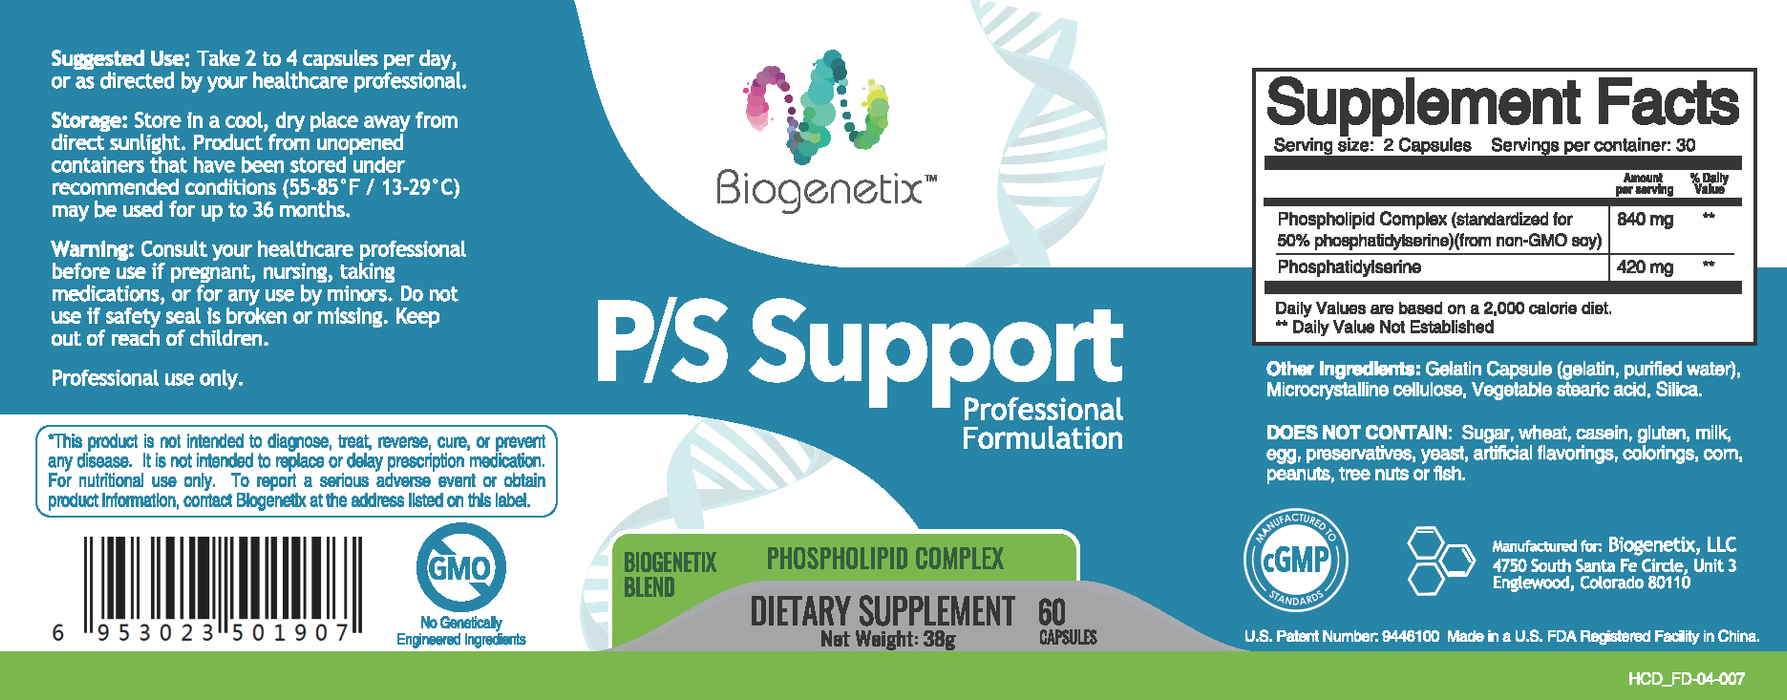 Biogenetix P/S Support 60 caps